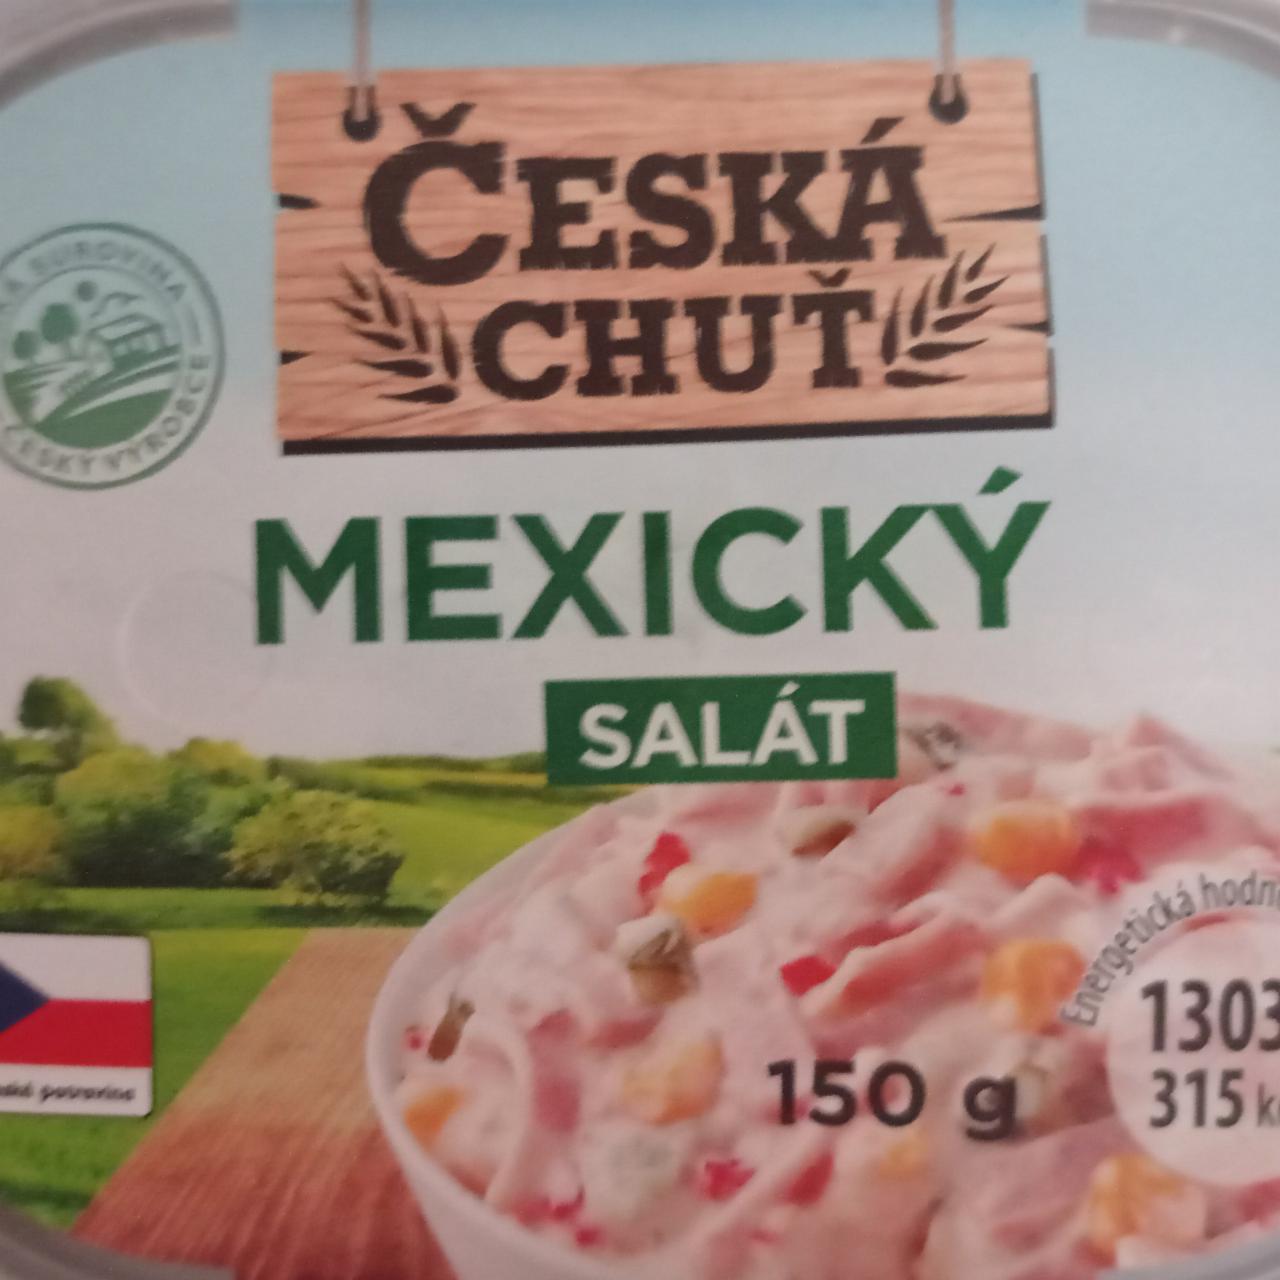 Fotografie - mexický salát Česká chuť